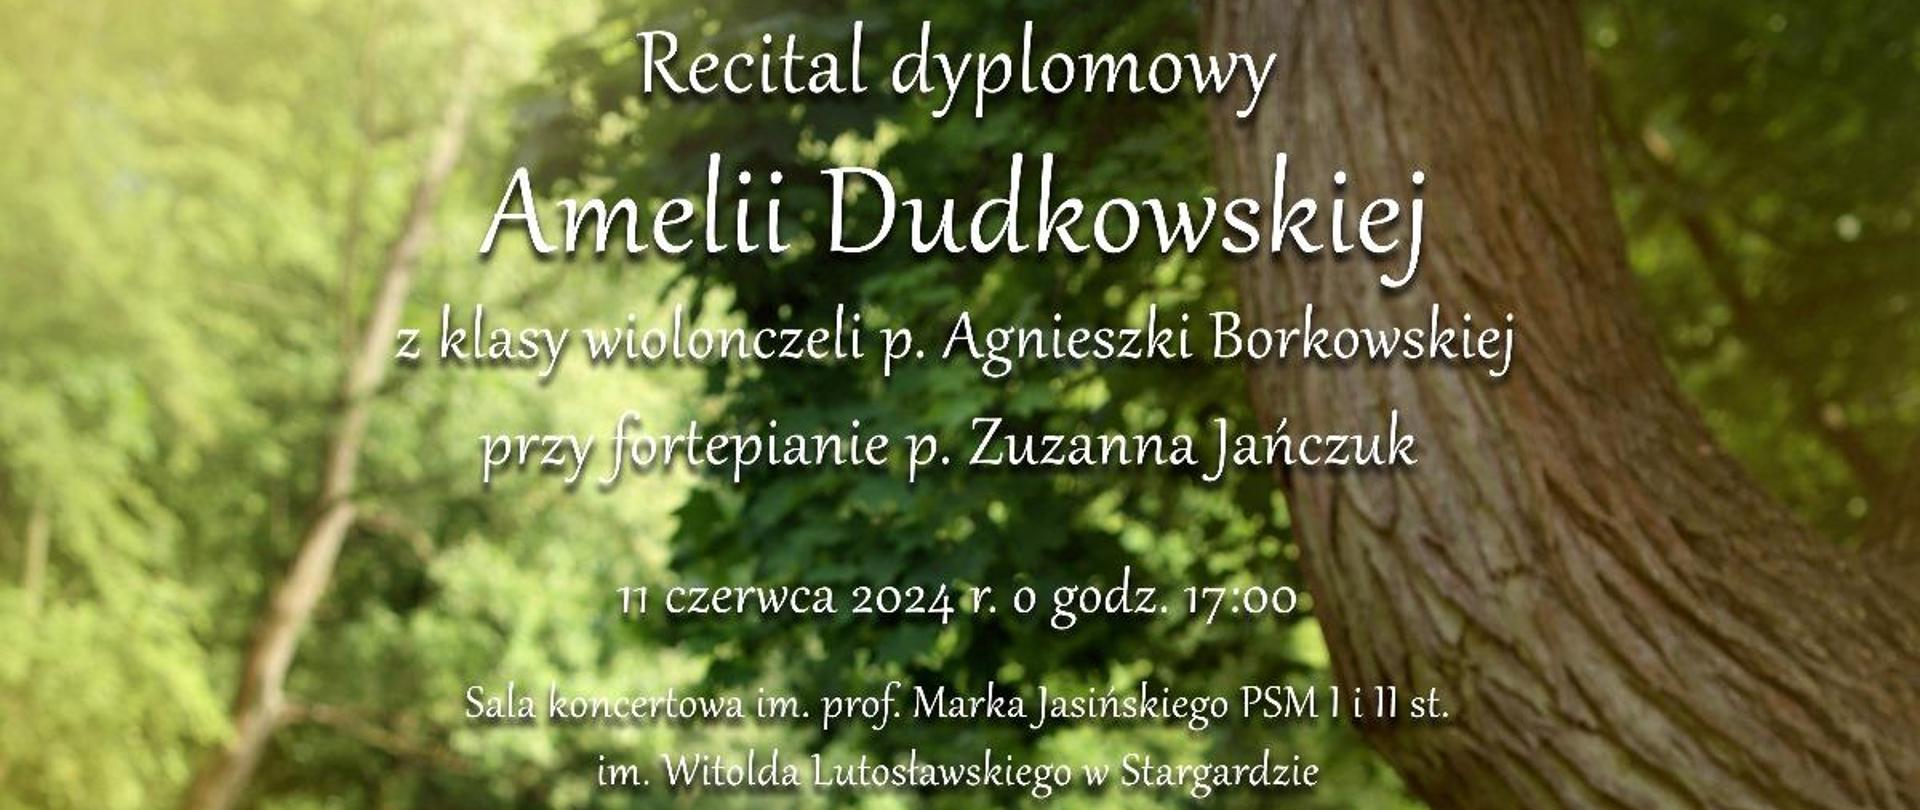 Plakat informujący o recitalu dyplomowym Amelii Dudkowskiej w dniu 11 czerwca 2024 o godzinie 17.00. Tłem plakatu jest zdjęcie uczennicy, która siedzi bokiem i gra na wiolonczeli wśród wiosennej zieleni nad rzeką. Z prawej strony widać pień pochylonego dużego drzewa. Amelia ubrana jest w koronkowa czarną suknię z beżowa podszewką bez rękawów. 